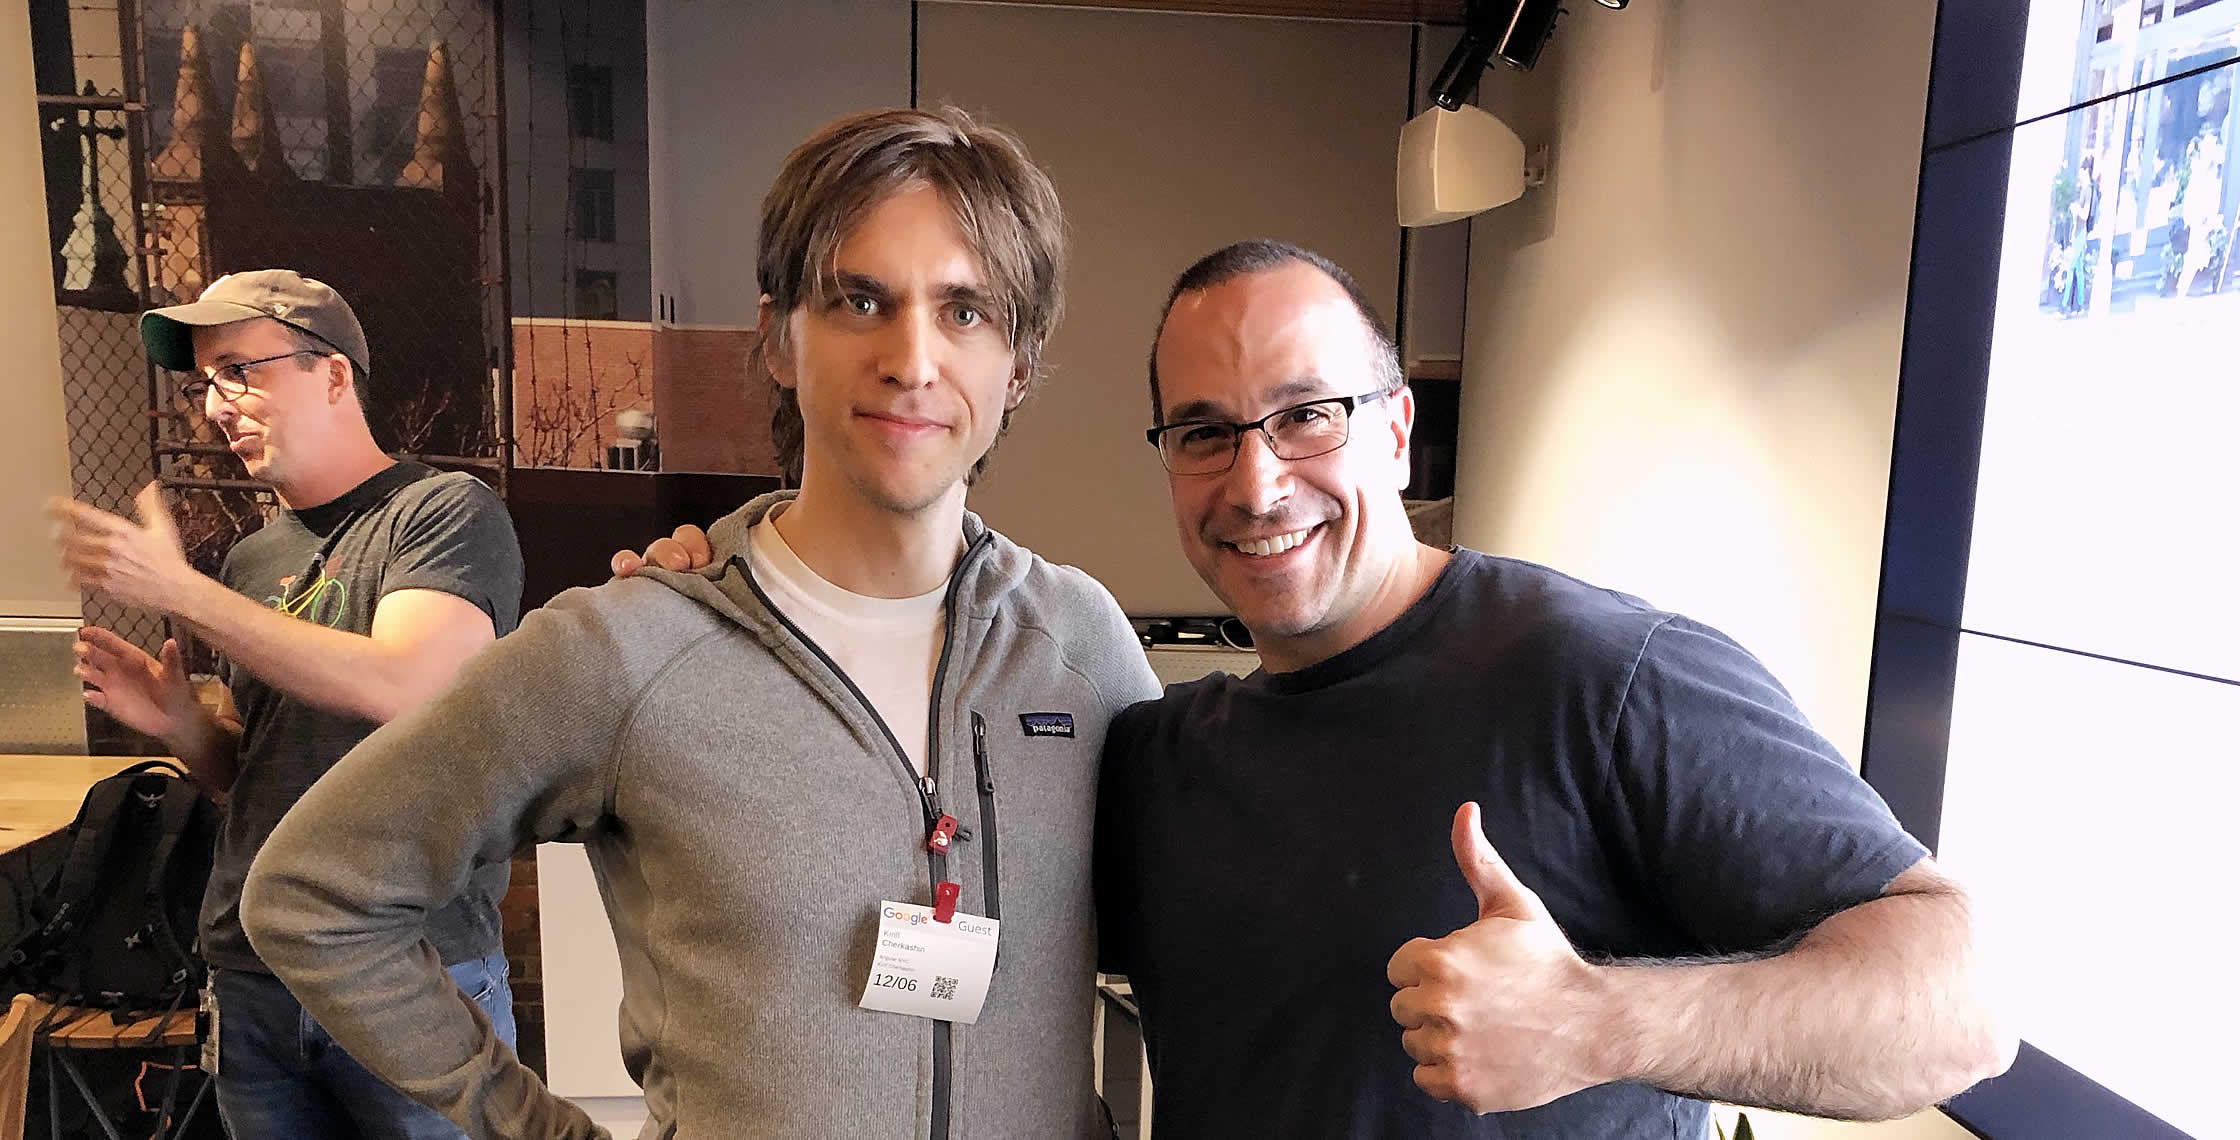 Ben Nadel at the Angular NYC Meetup (Dec. 2018) with: Kirill Cherkashin